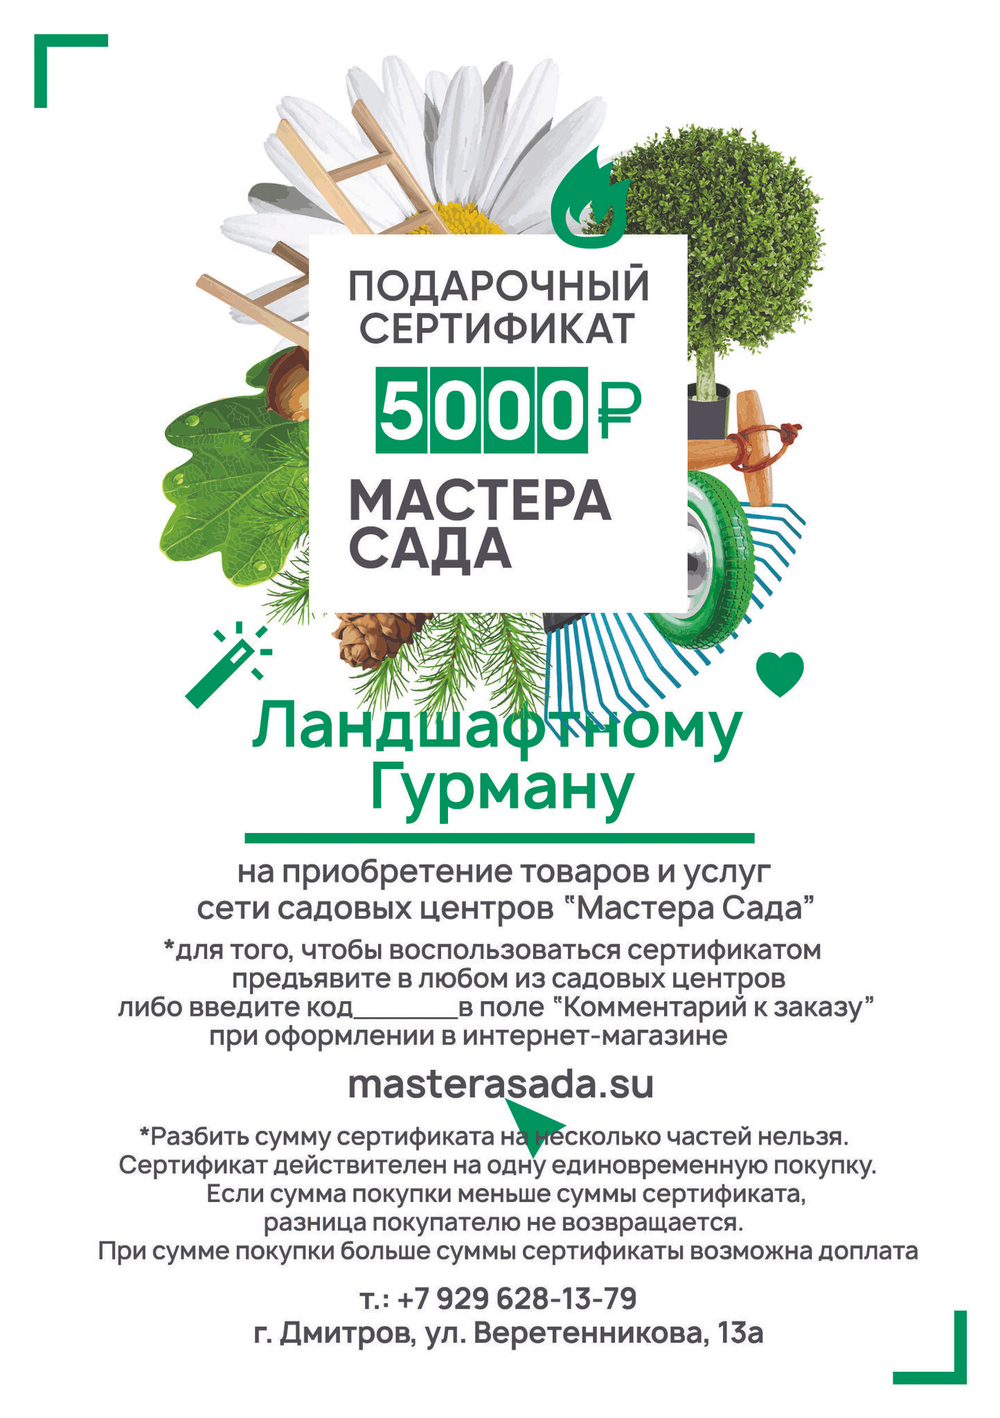 Подарочный сертификат на 5000 рублей с индивидуальным дизайном